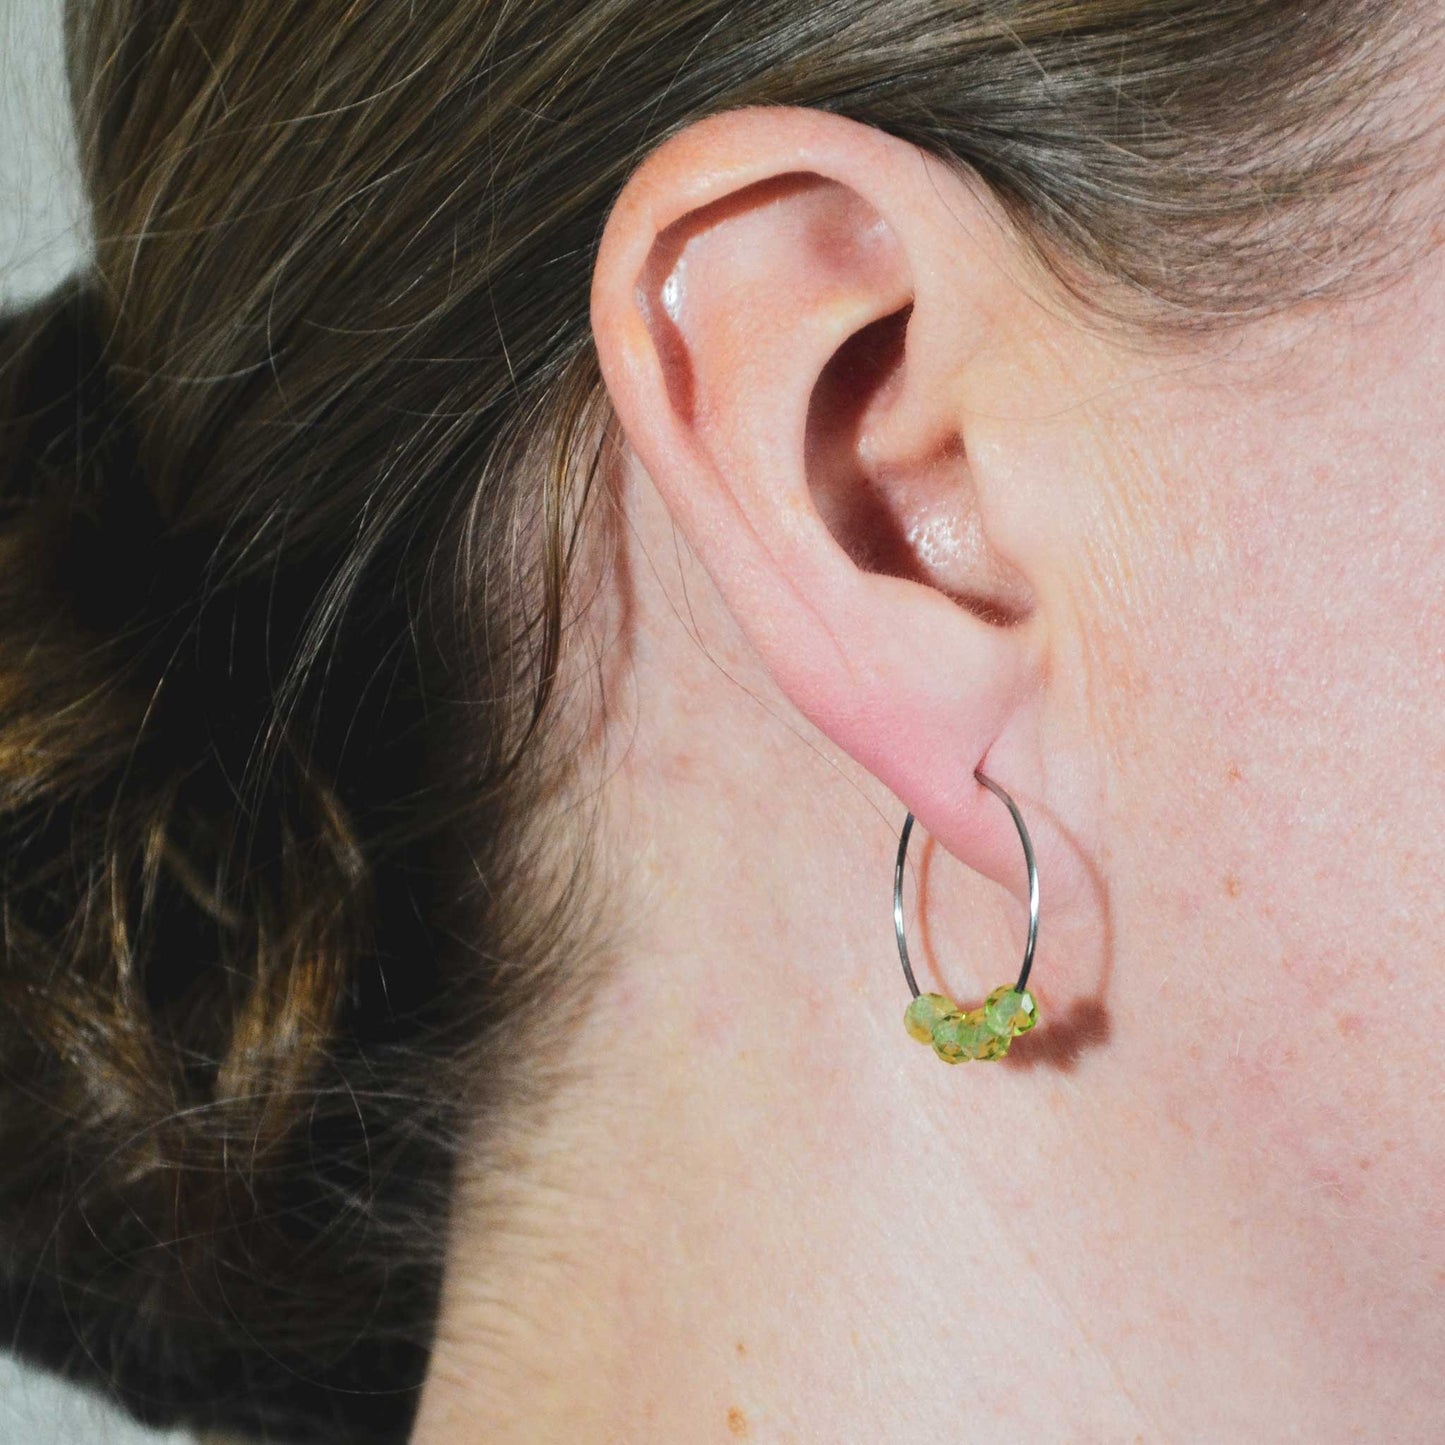 Woman wearing dainty Peridot hoop earrings in earlobe